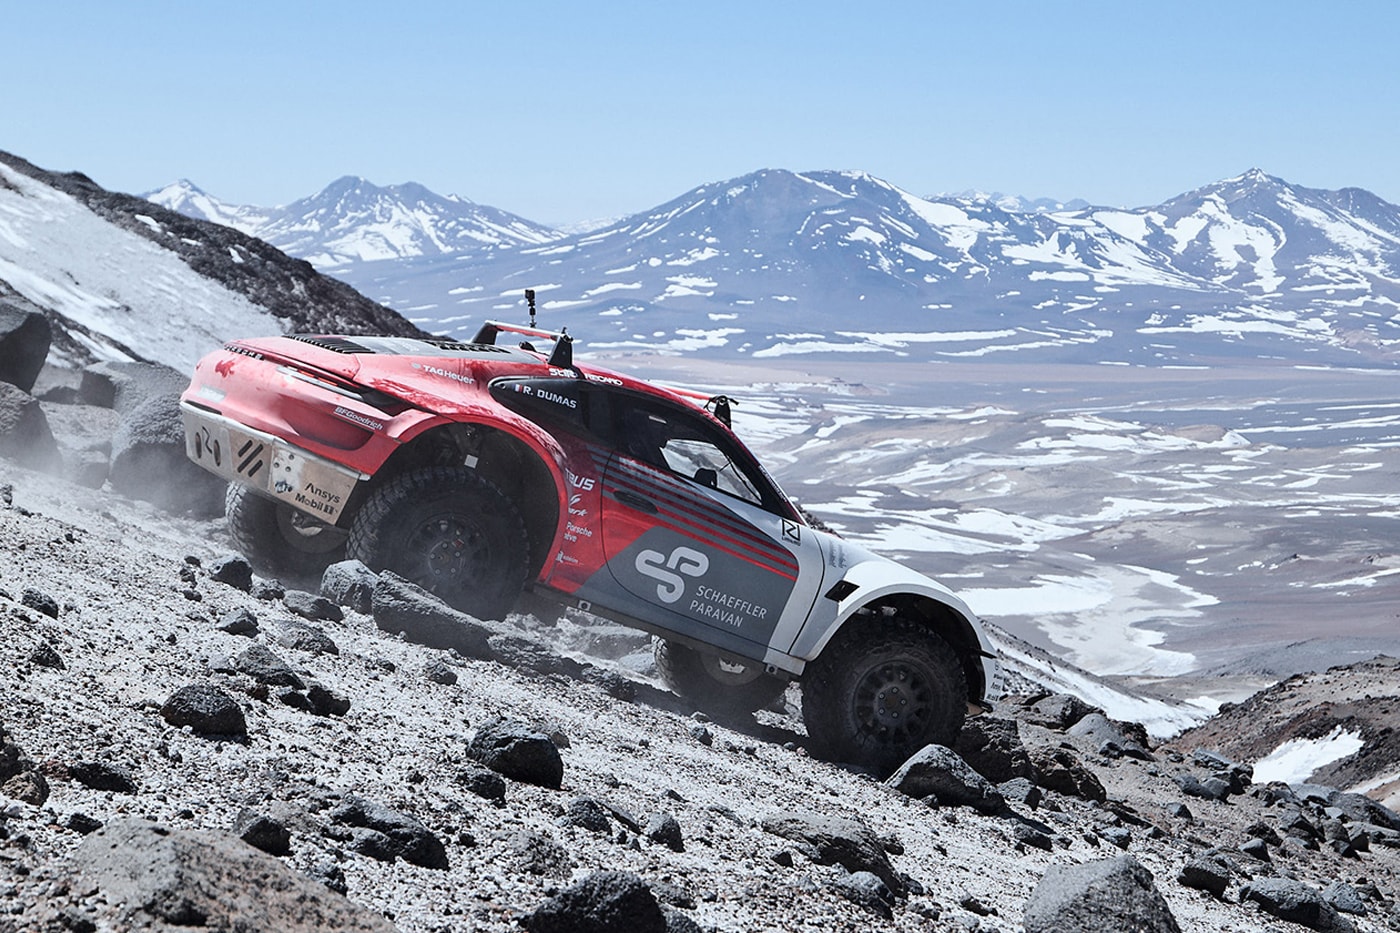 porsche 911 внедорожник масштабируется чилийский вулкан 6000 м уровень моря классический спорткар негатив 30 градусов красный серый белый видео сафари концепция